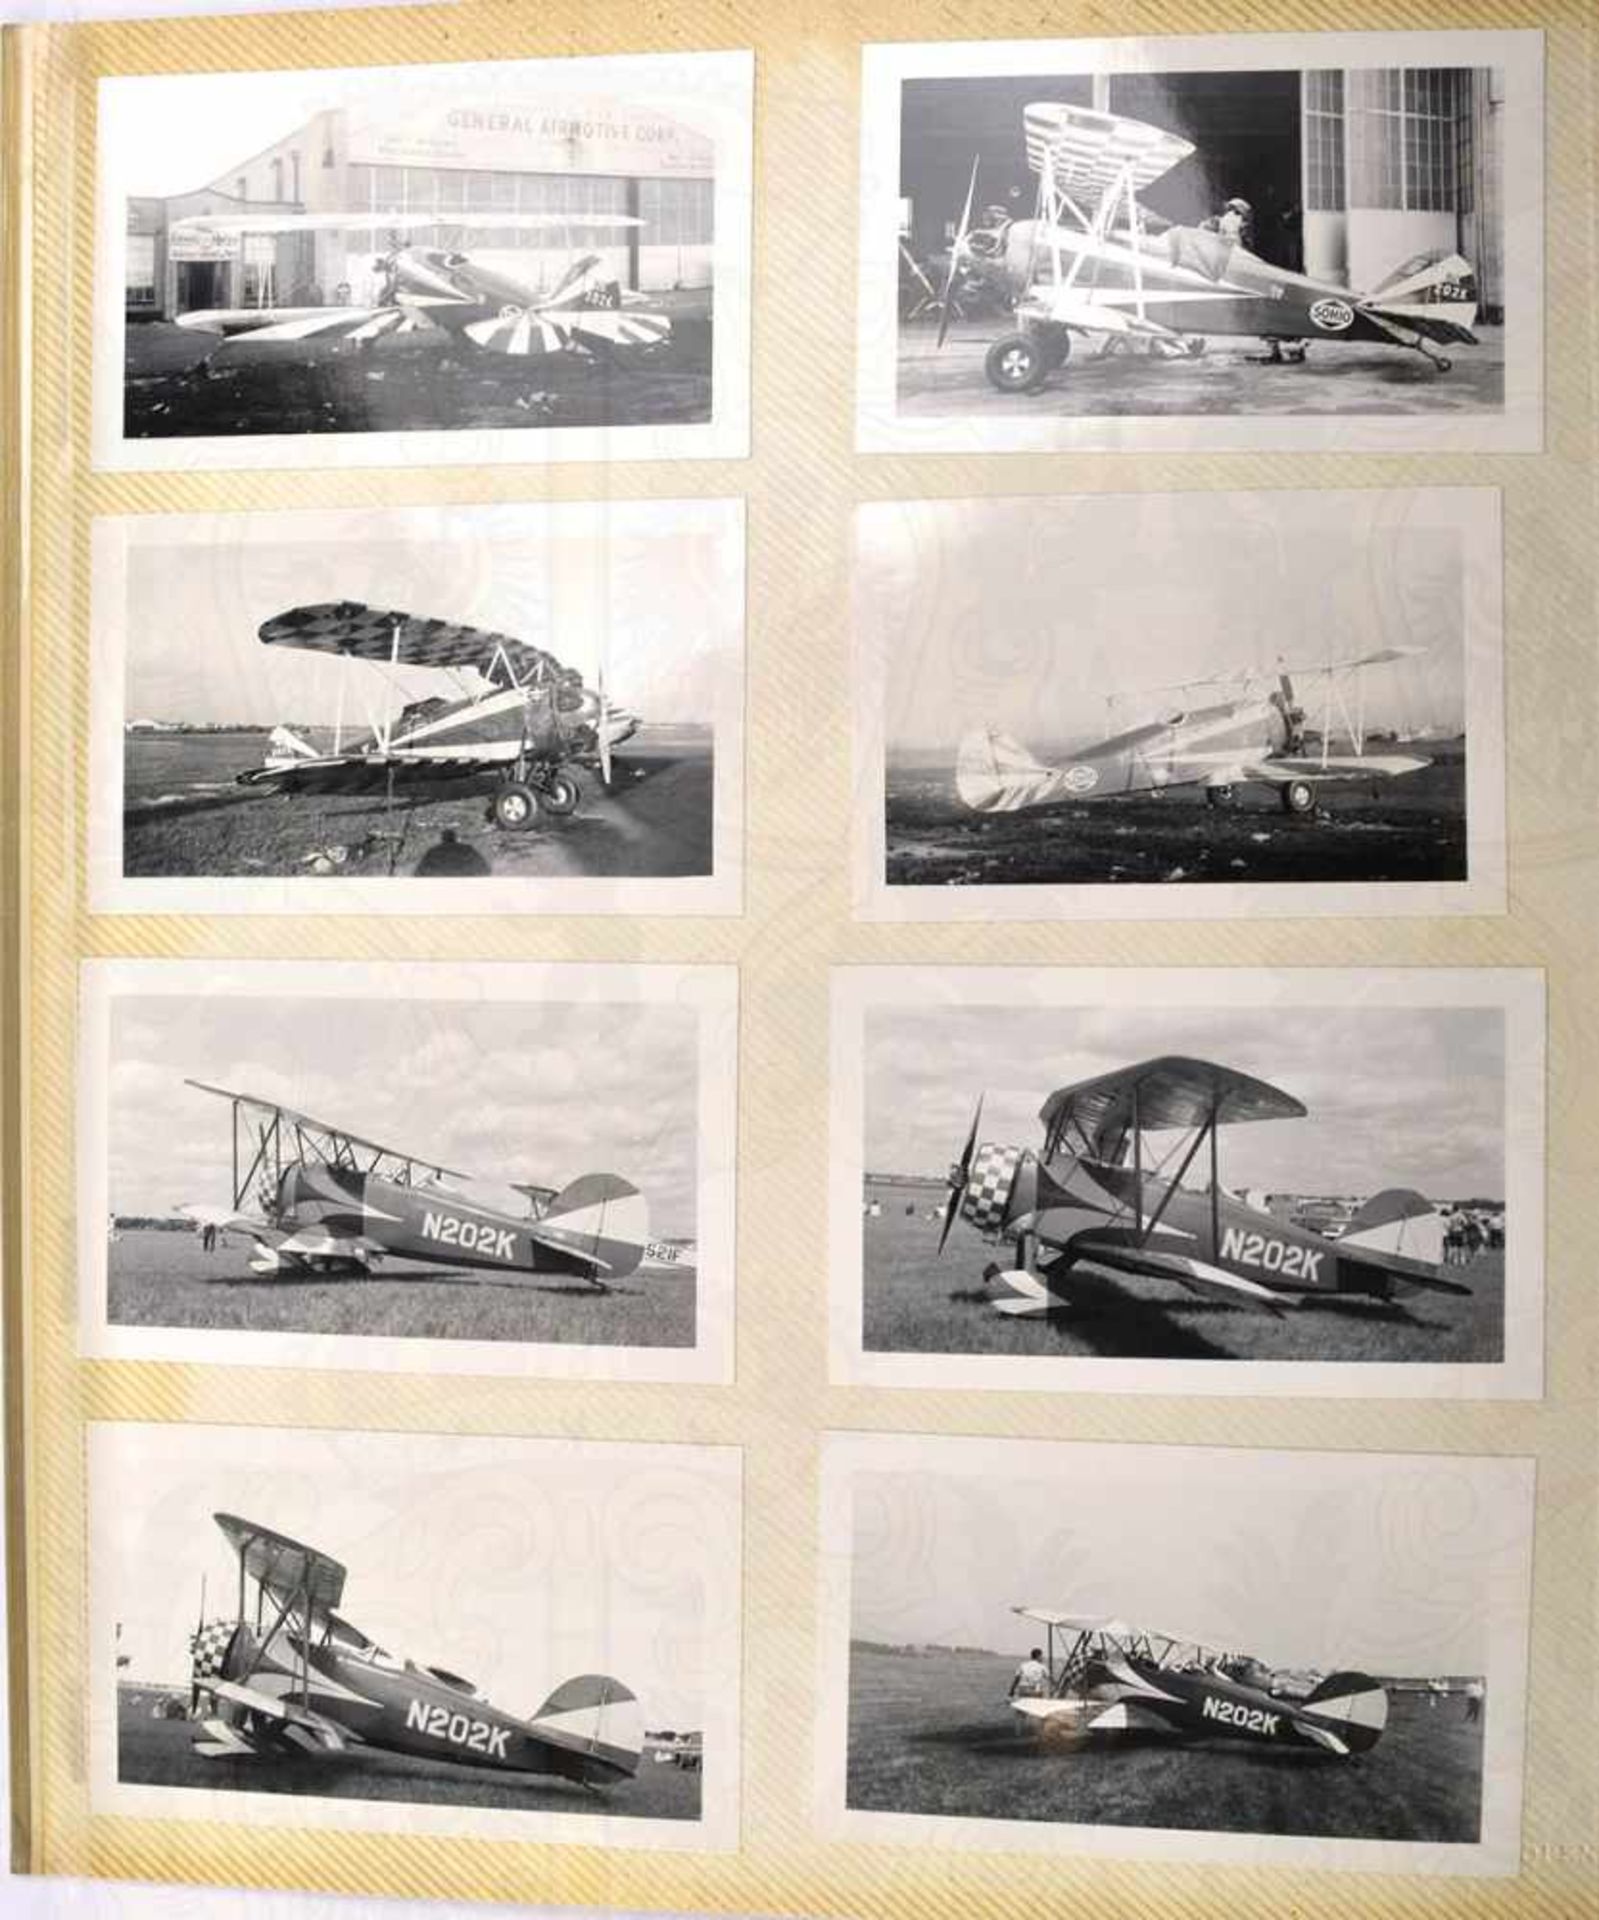 2 FOTOALBEN, mit 320 Fotos v. Aufklärungs-, Trainings-, Sport- und Charterflugzeugen etc., meist - Bild 2 aus 5